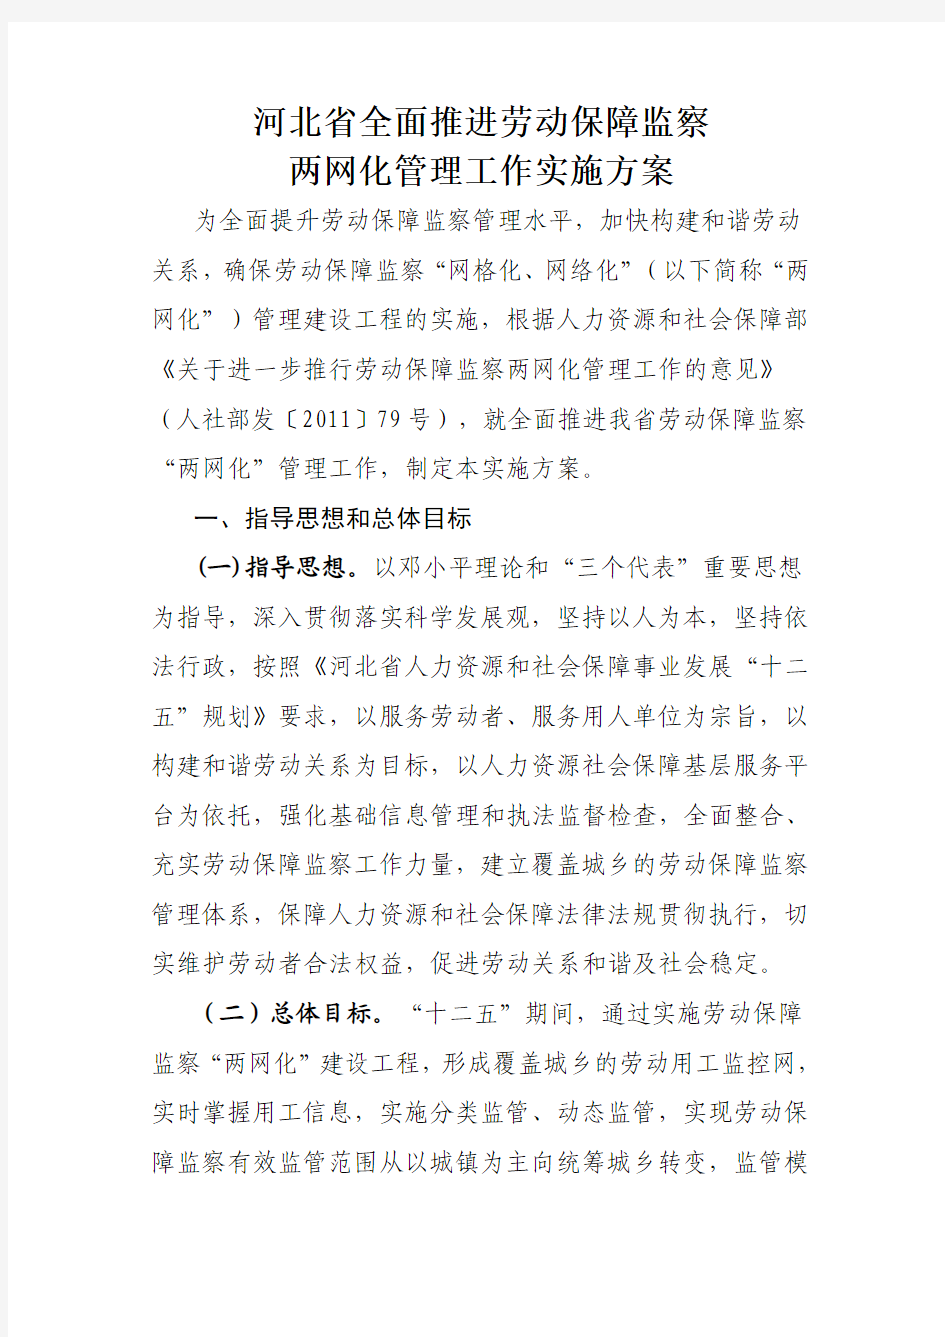 河北省全面推进劳动保障监察两网化管理工作实施方案